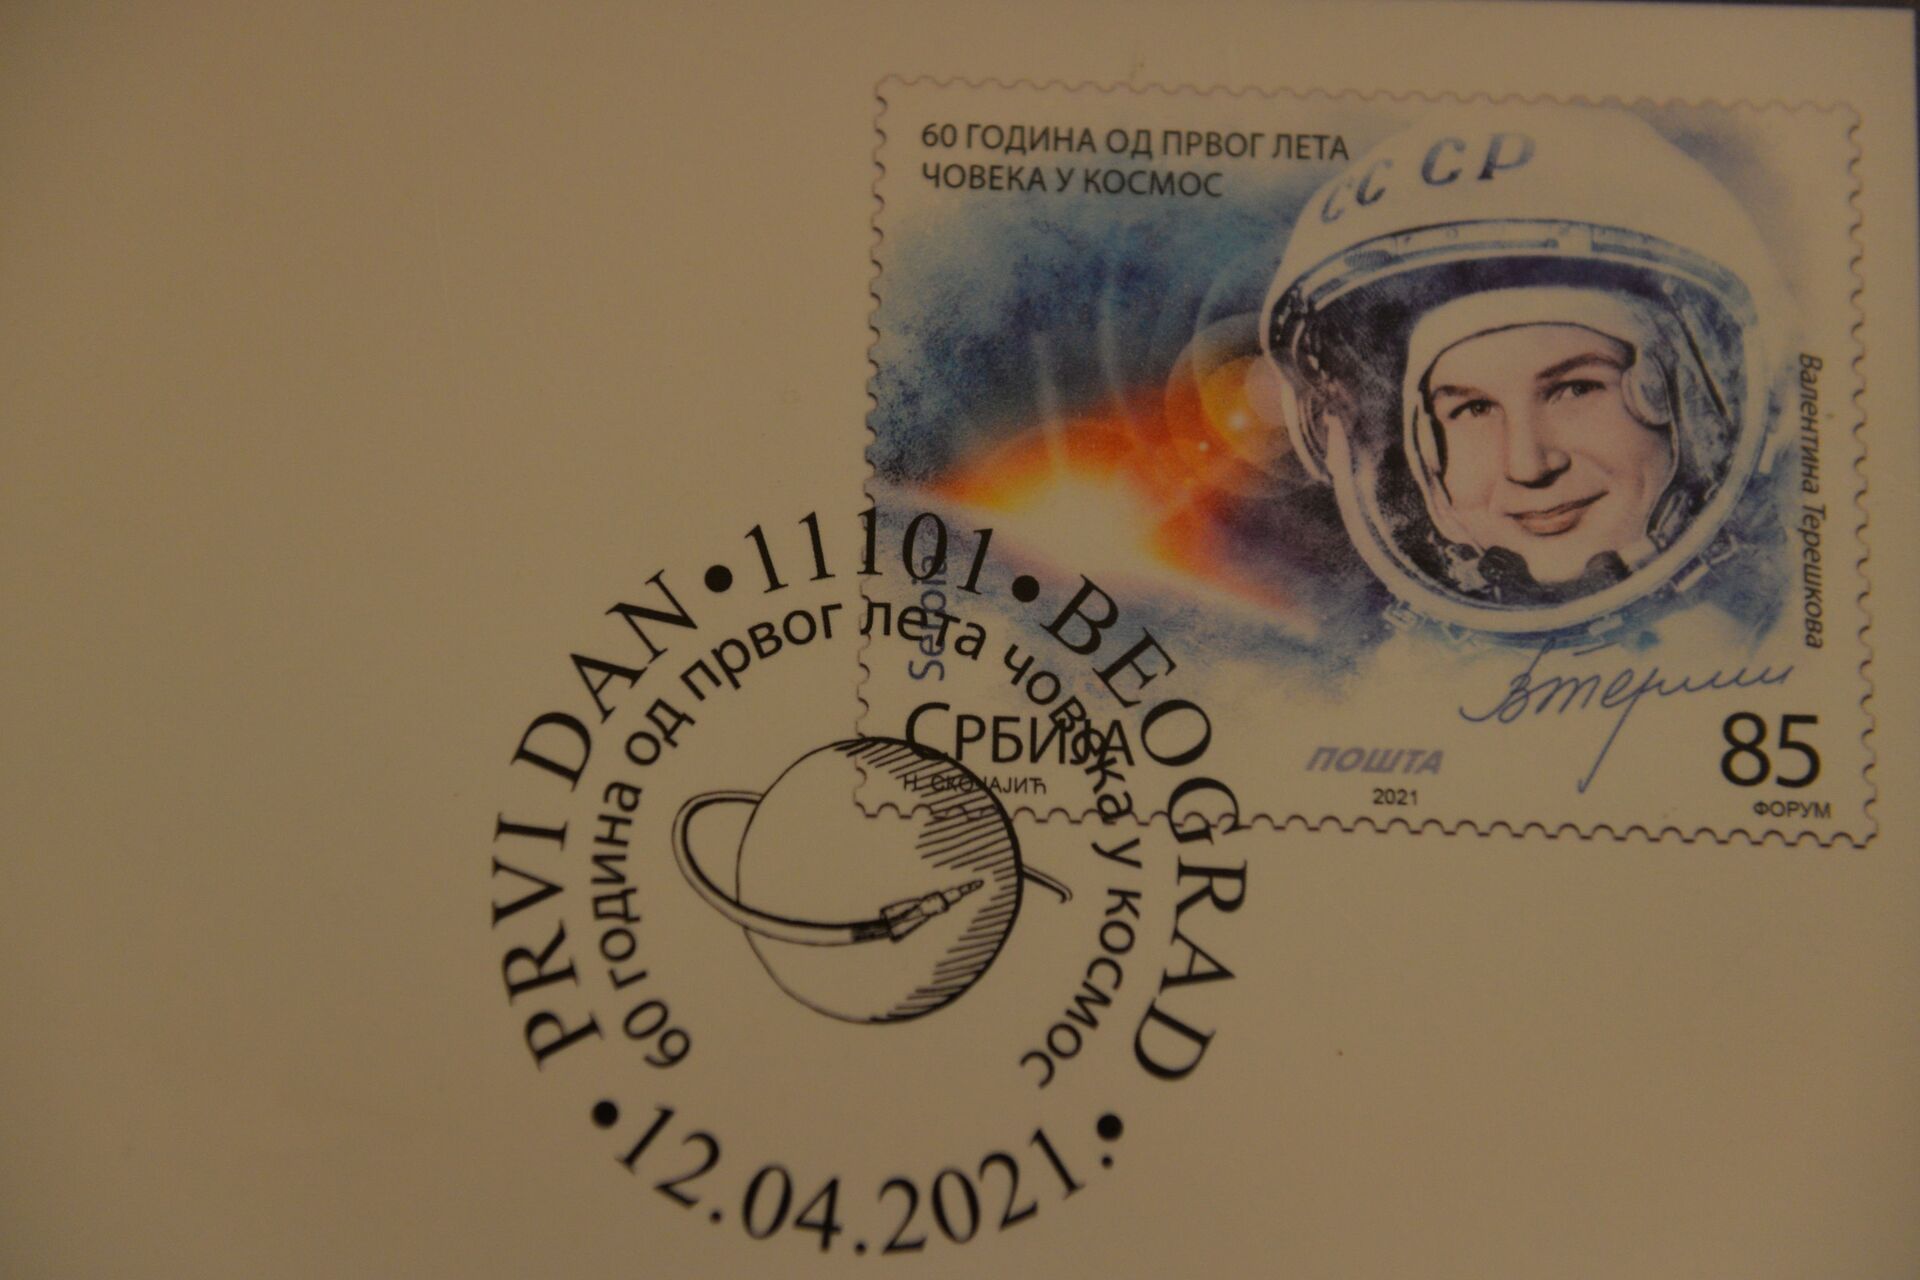 U Beogradu promocija poštanskih marki posvećenih Gagarinu /foto/ - Sputnik Srbija, 1920, 12.04.2021